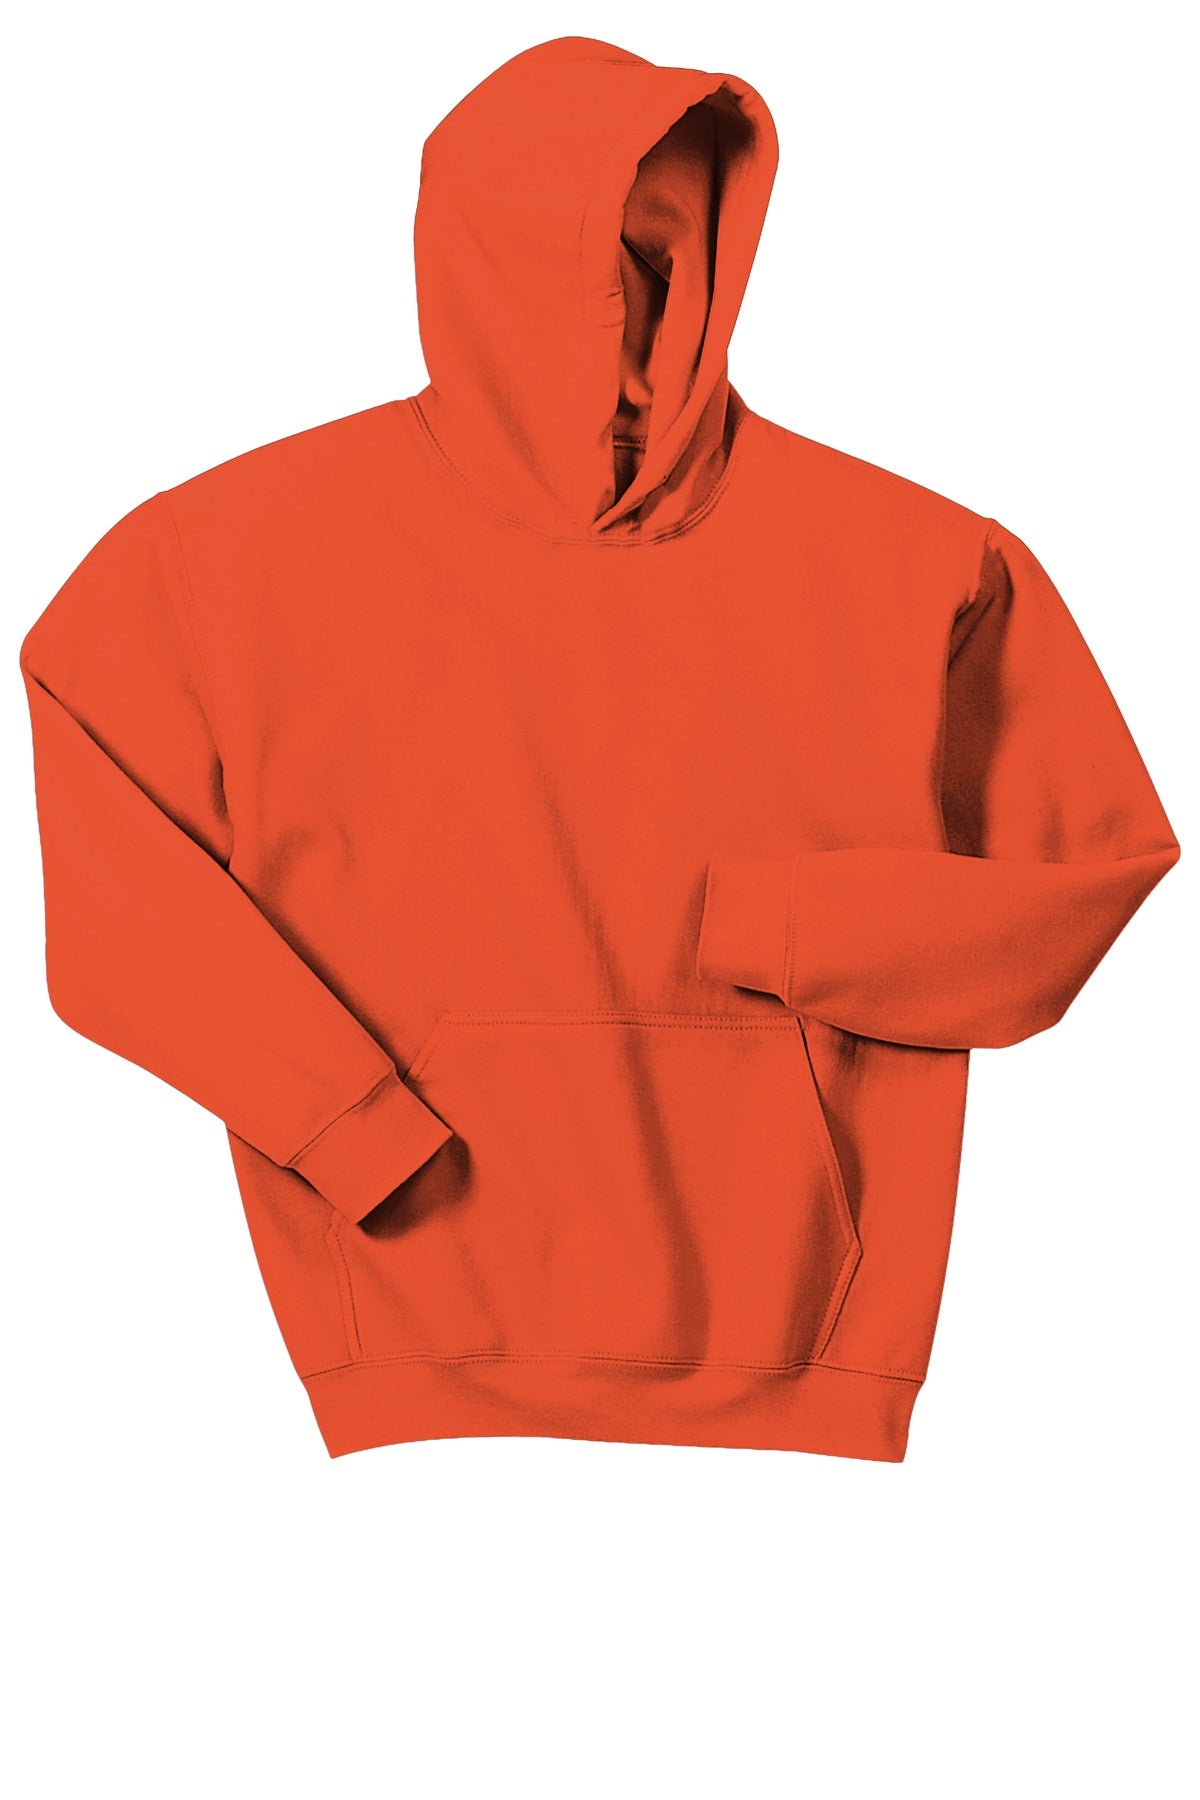 Gone RogueGildan® - Youth Heavy Blend™ Hooded Sweatshirt. 18500B Logo #1